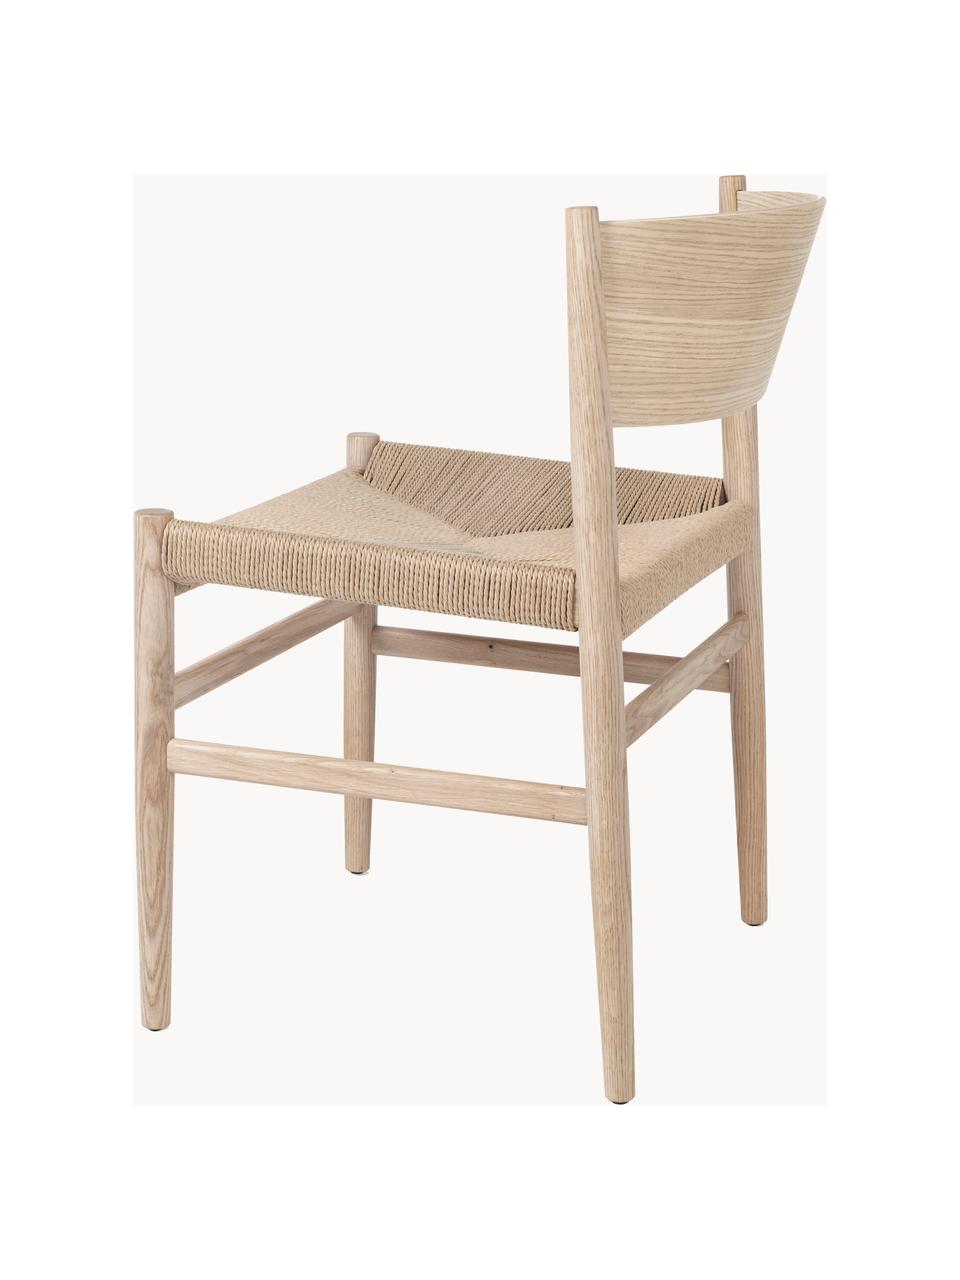 Chaise artisanale avec assise tressée Nestor, Beige clair, bois de chêne, clair, larg. 50 x prof. 53 cm